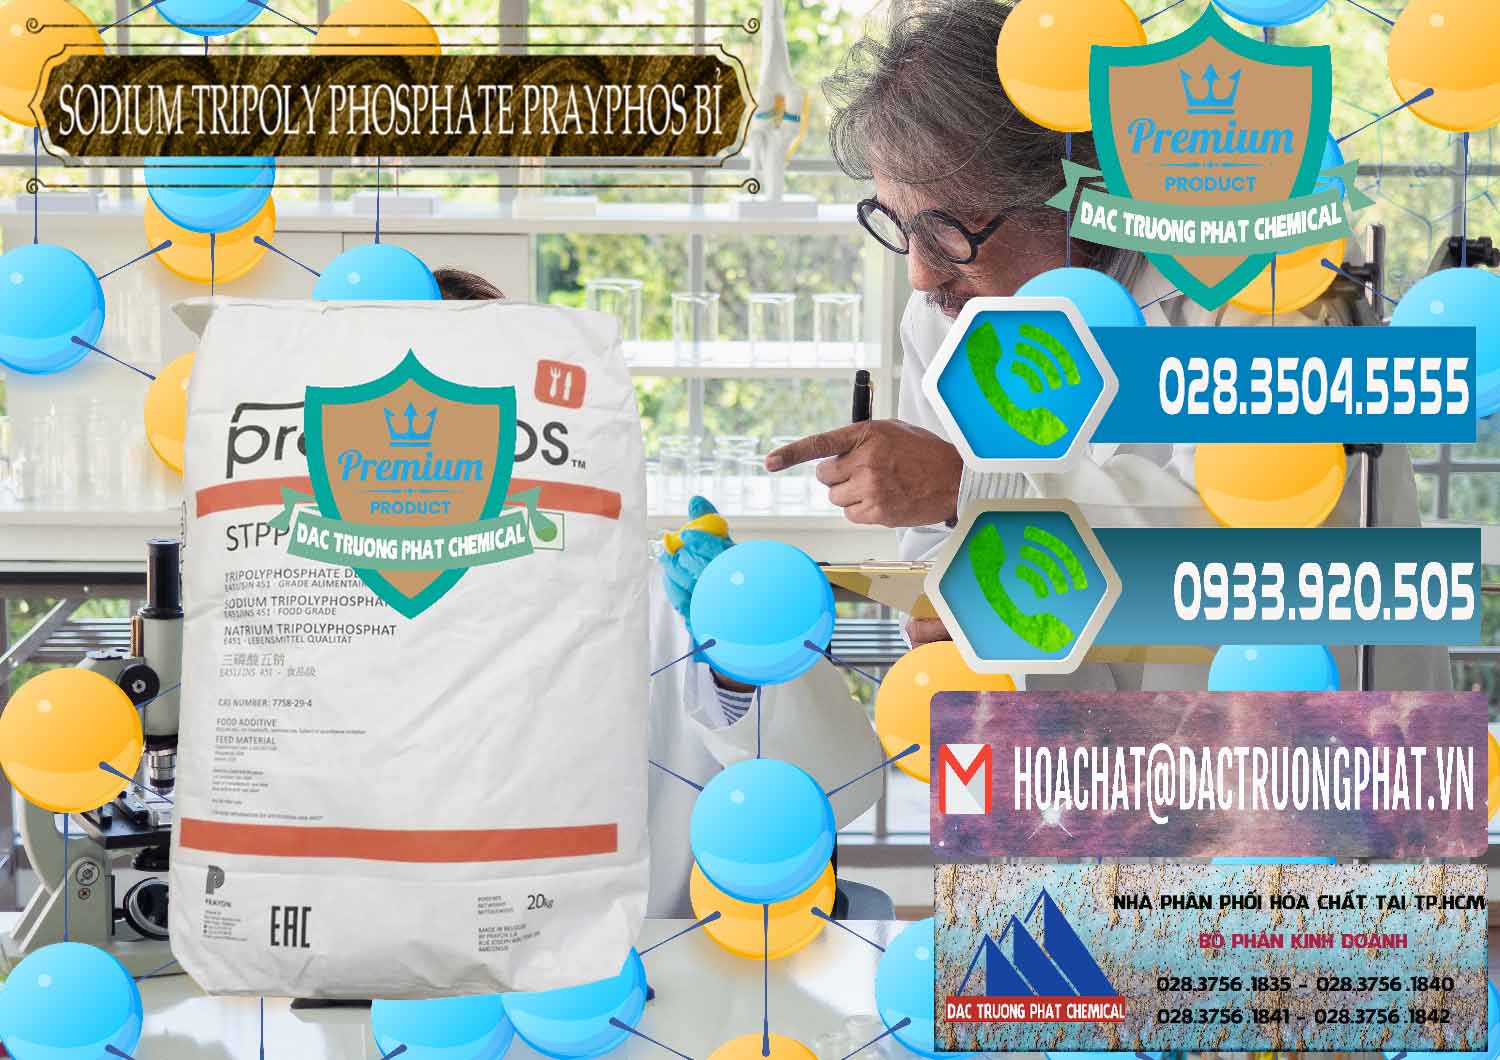 Cty chuyên bán và phân phối Sodium Tripoly Phosphate - STPP Prayphos Bỉ Belgium - 0444 - Nhà phân phối và cung cấp hóa chất tại TP.HCM - congtyhoachat.net